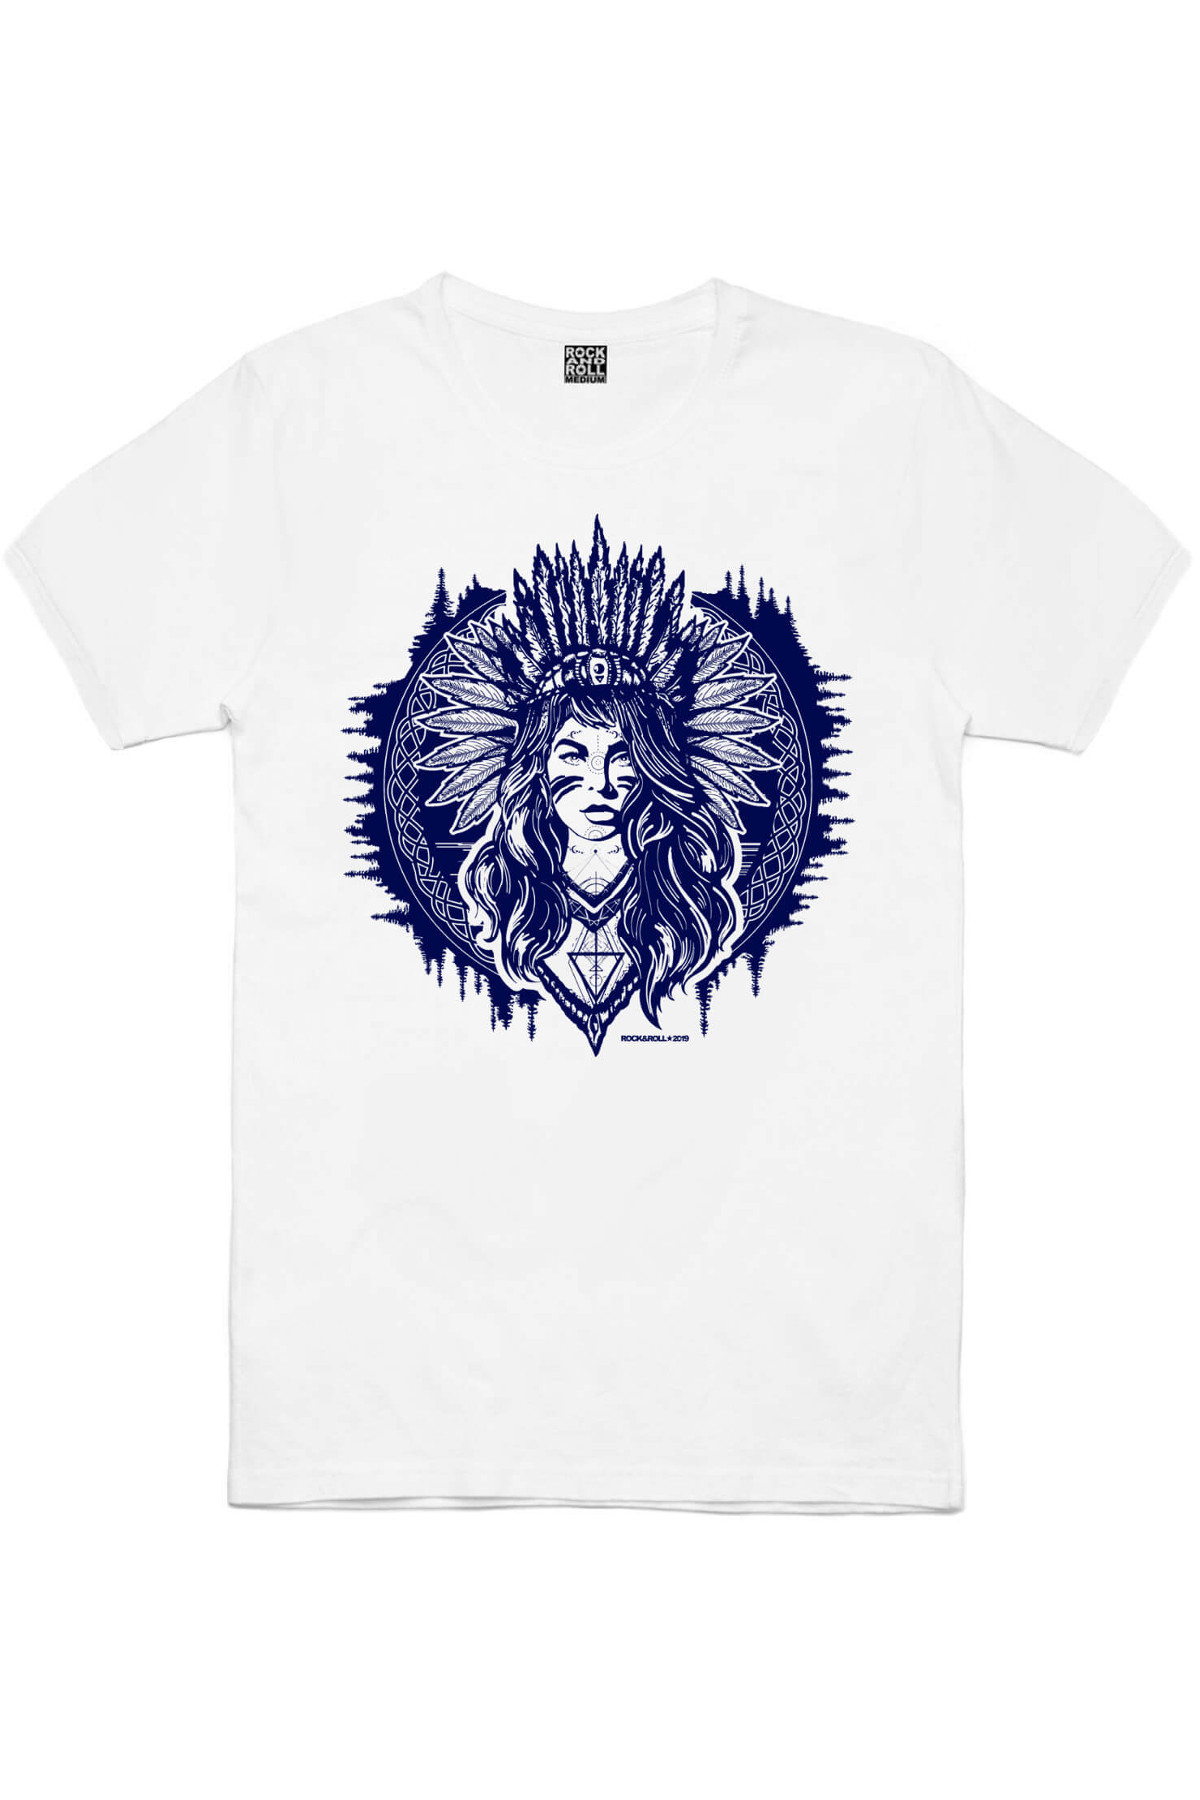 Büyük Şef, Kızılderili Kız Beyaz, Göklerin Kartalı Erkek 3'lü Eko Paket T-shirt